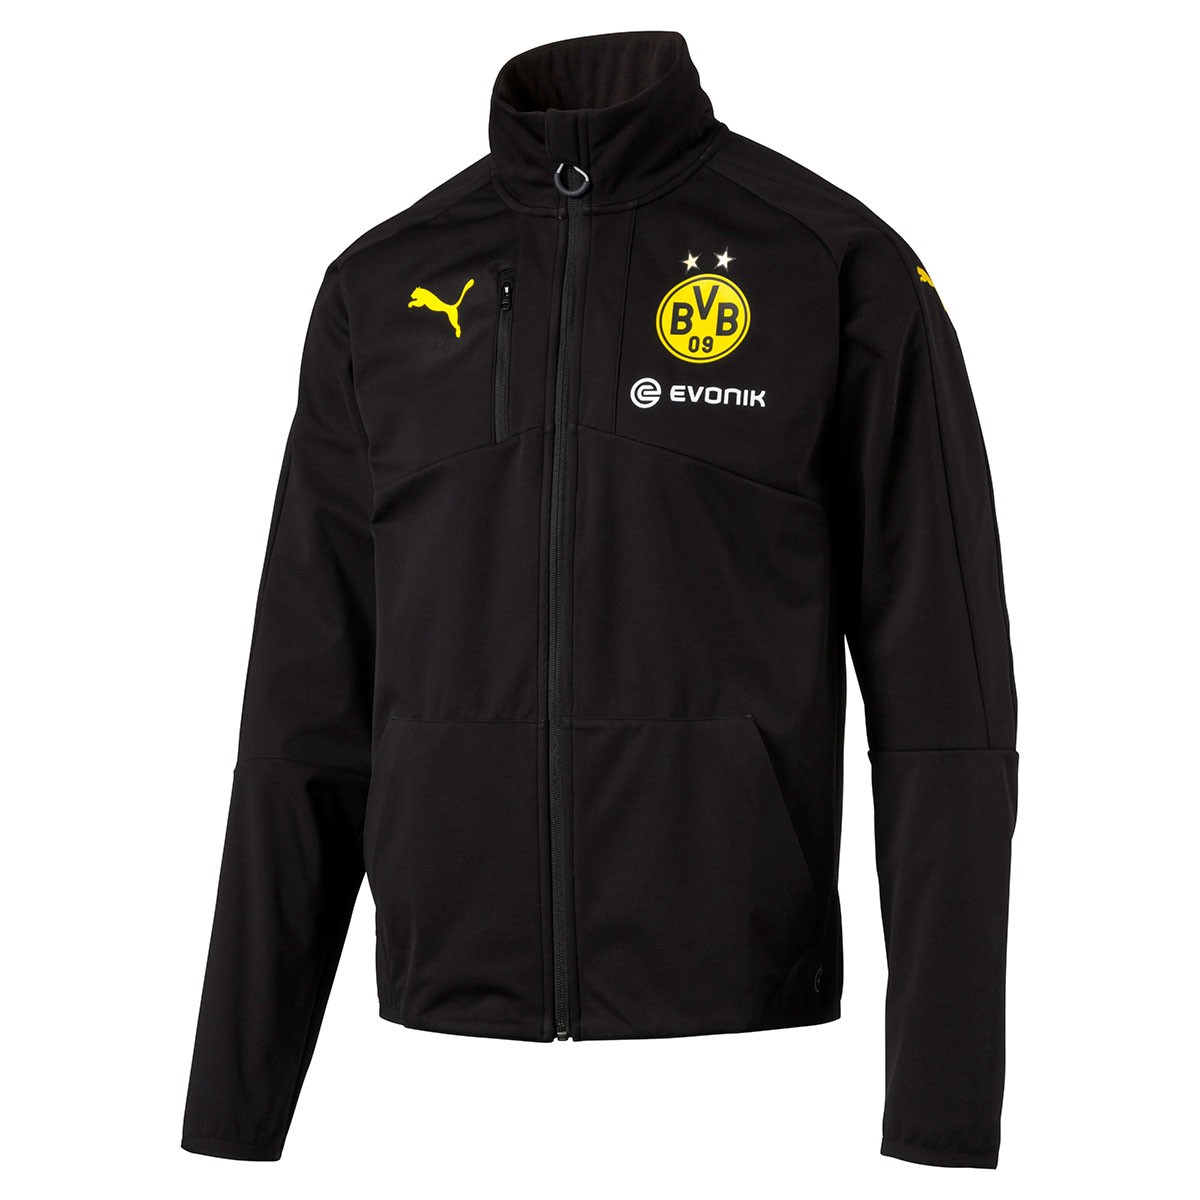 Puma BVB Softshell Jacket with Sponsor Jacke Herren Borussia Dortmund